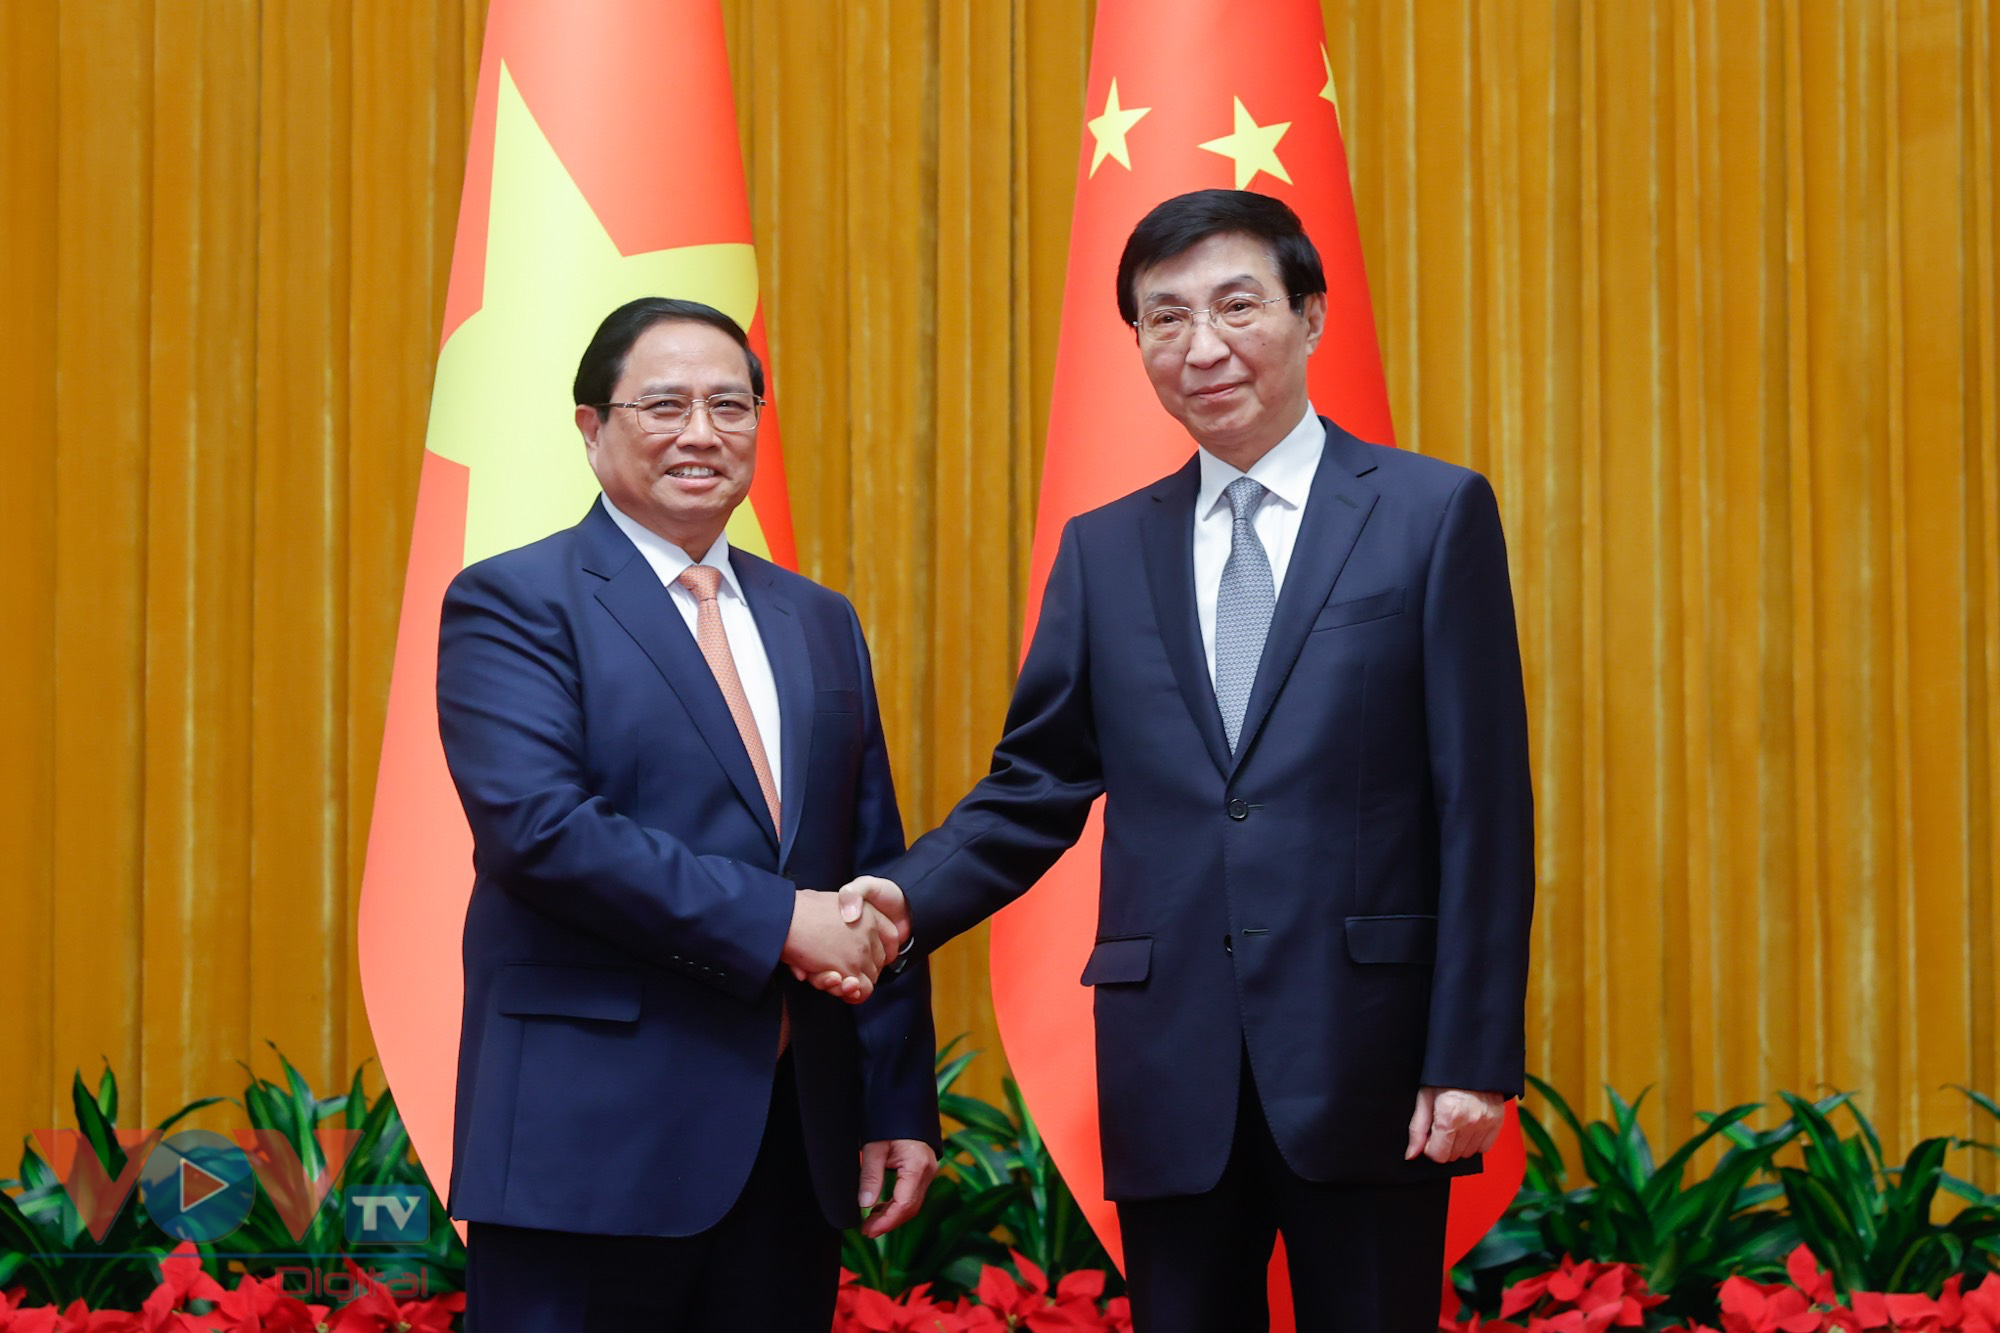 Thủ tướng Phạm Minh Chính kết thúc tốt đẹp chuyến công tác tham dự Hội nghị WEF Đại Liên và làm việc tại Trung Quốc- Ảnh 5.